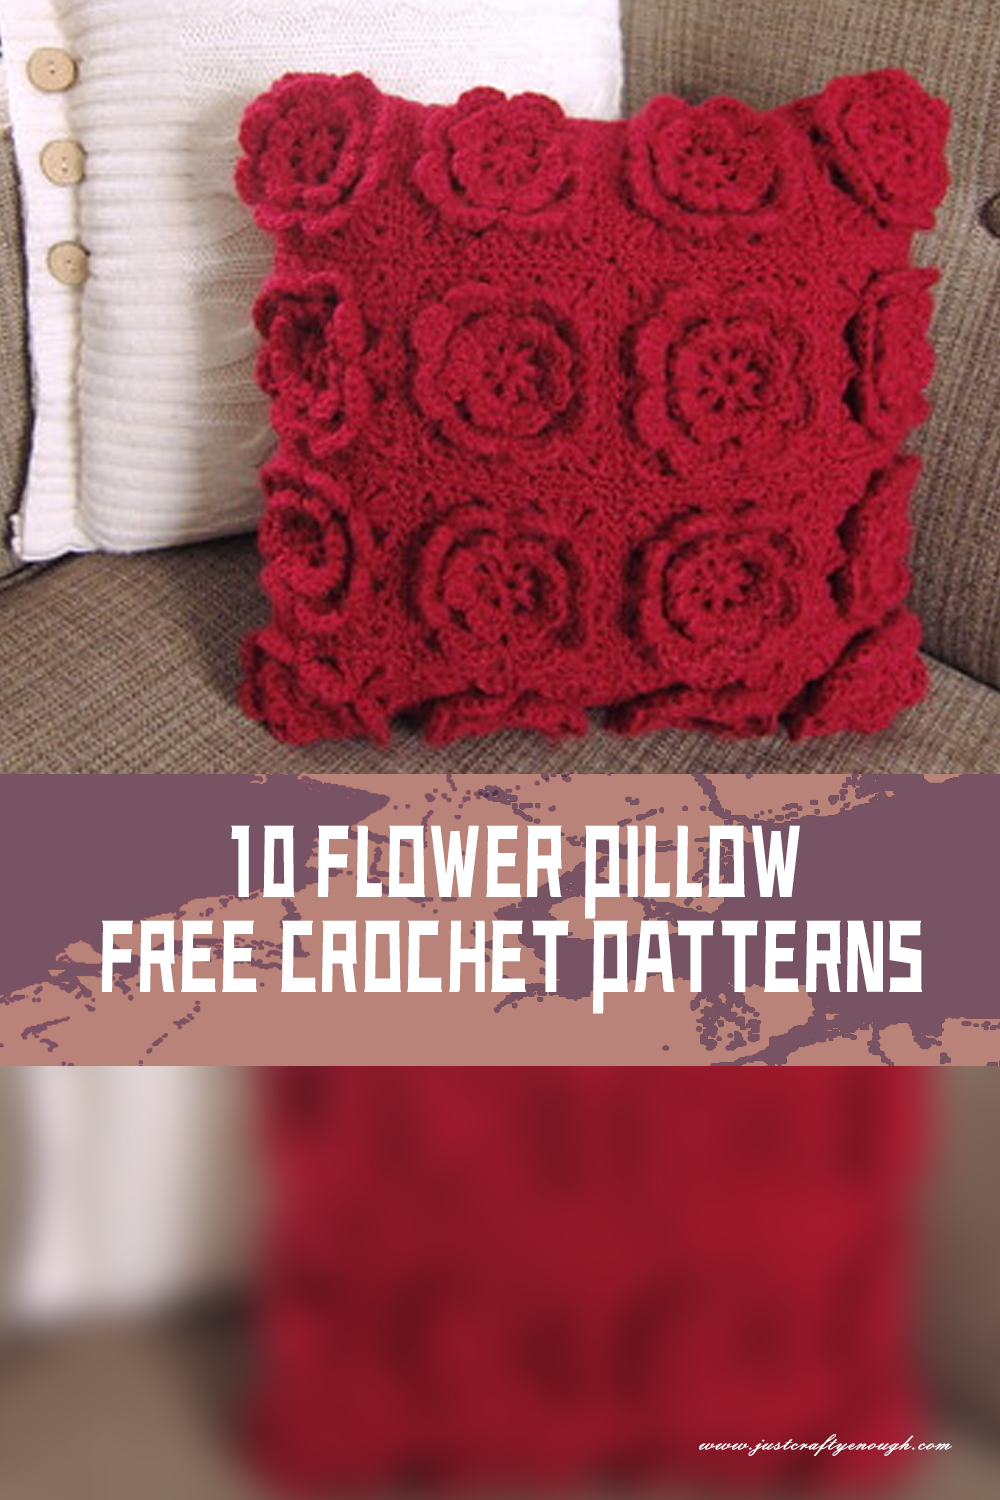 10 Flower Pillow FREE Crochet Patterns